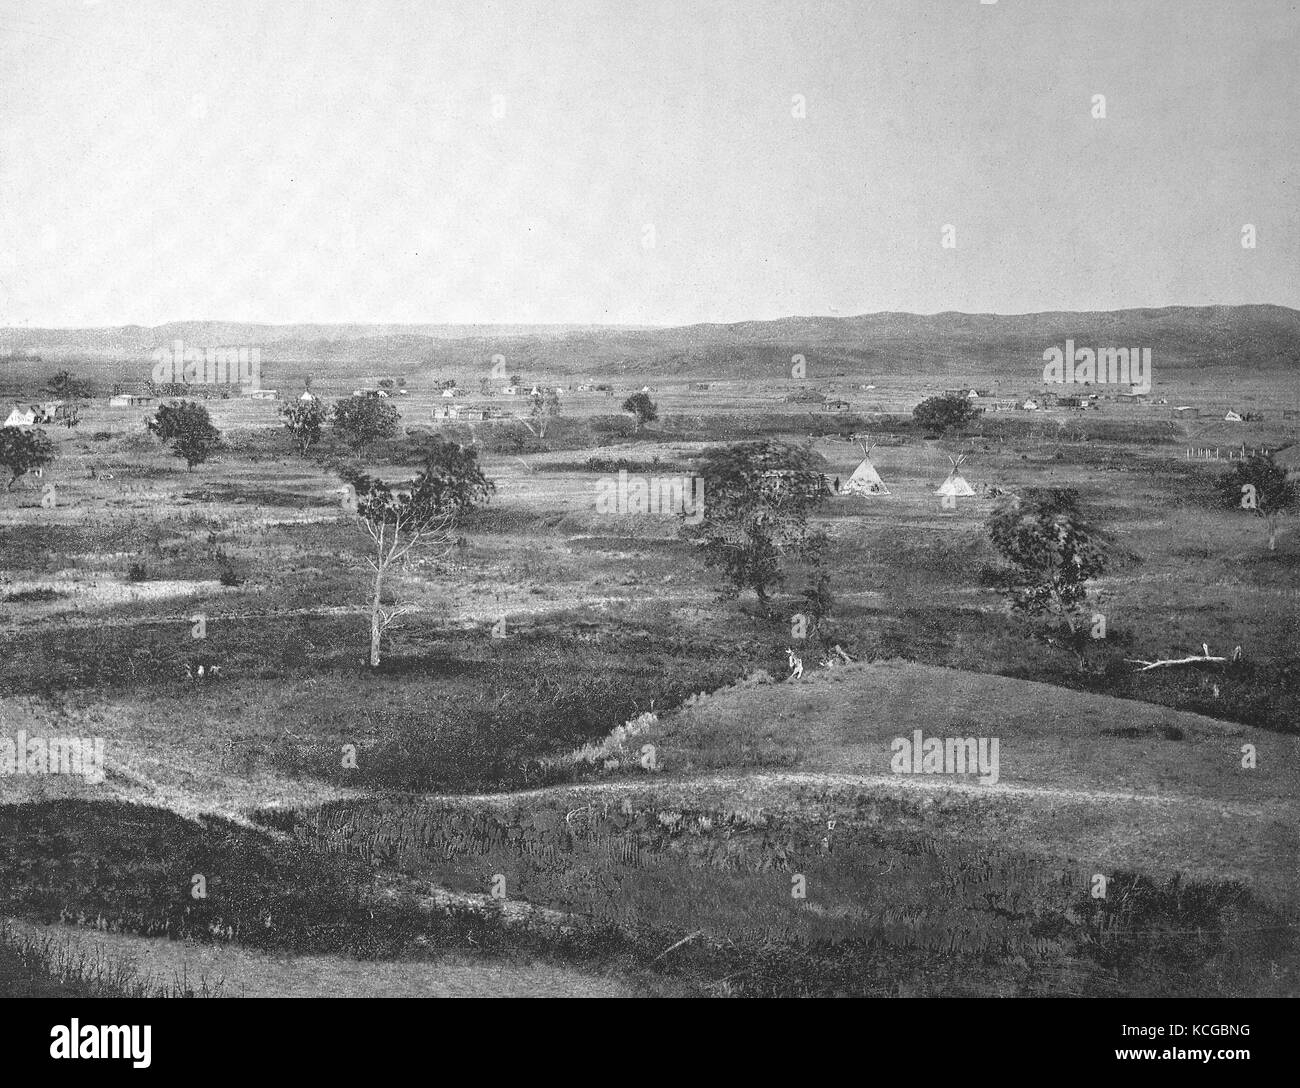 Villaggio indiano allo Cheyenne River nel territorio Dakota, un territorio storico degli Stati Uniti d'America, digitale migliorata la riproduzione di una foto storiche dal (stimato) Anno 1899 Foto Stock